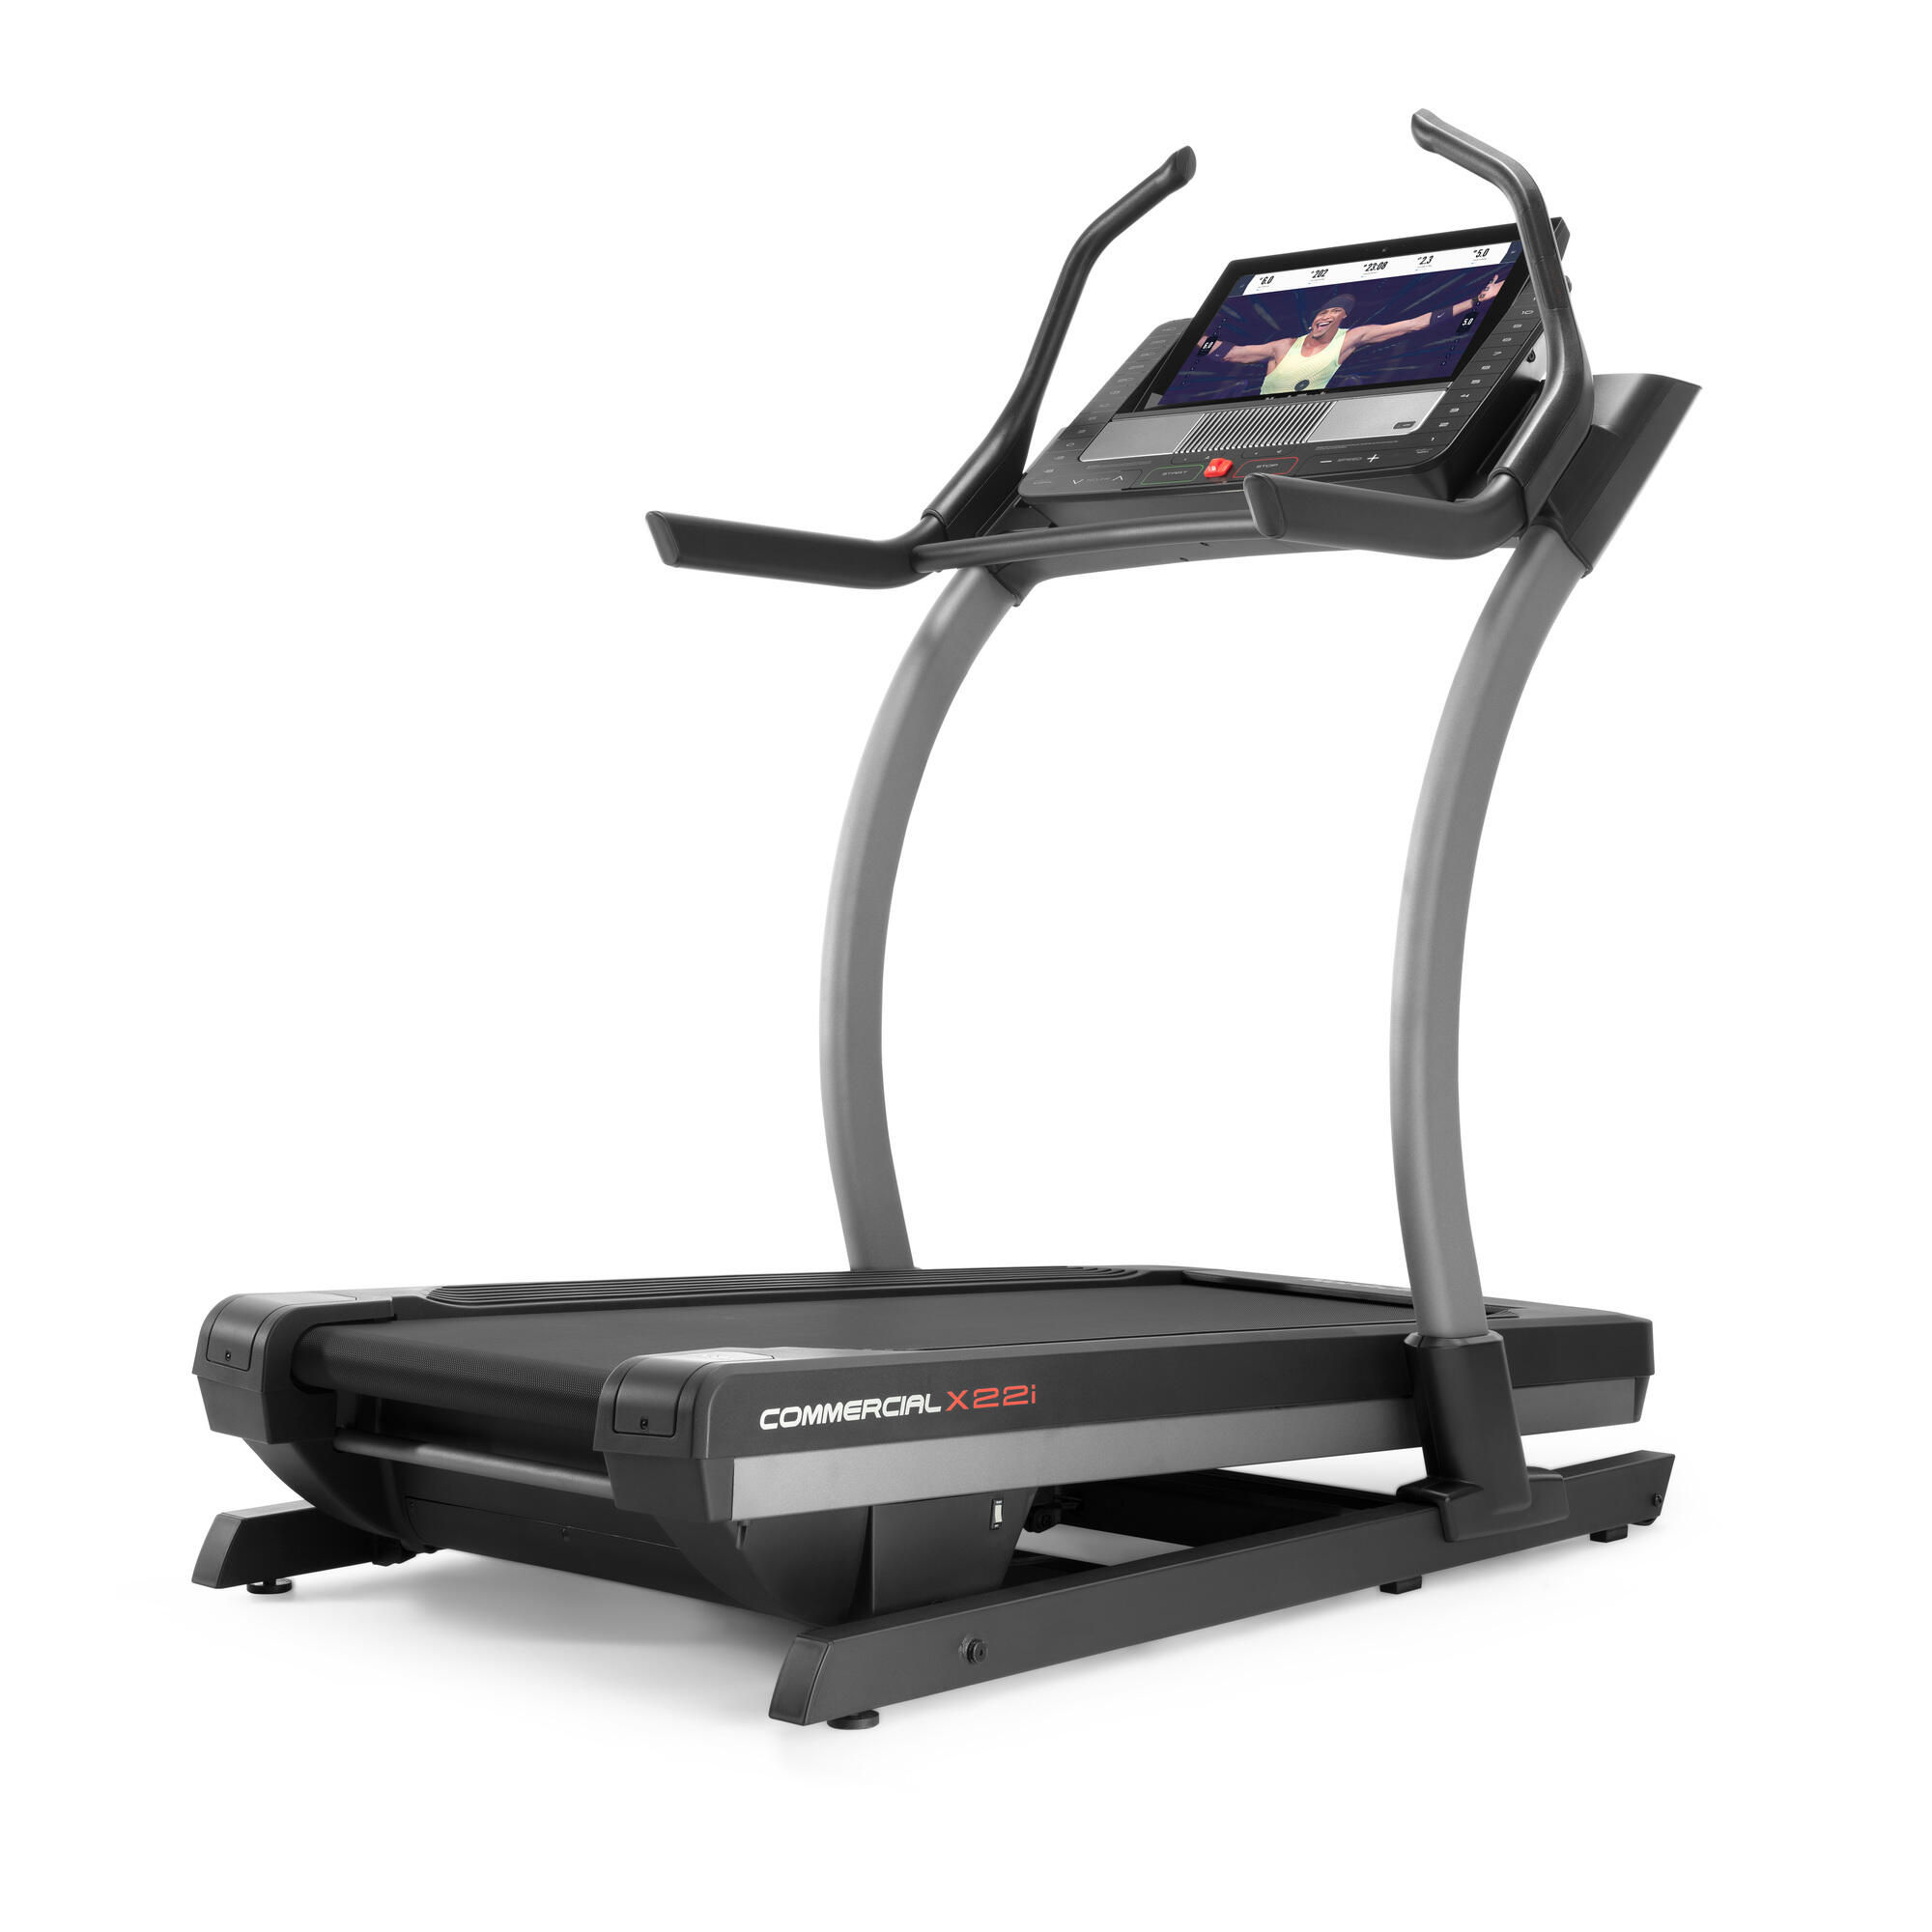 NORDICTRACK Treadmill Commercial X22i